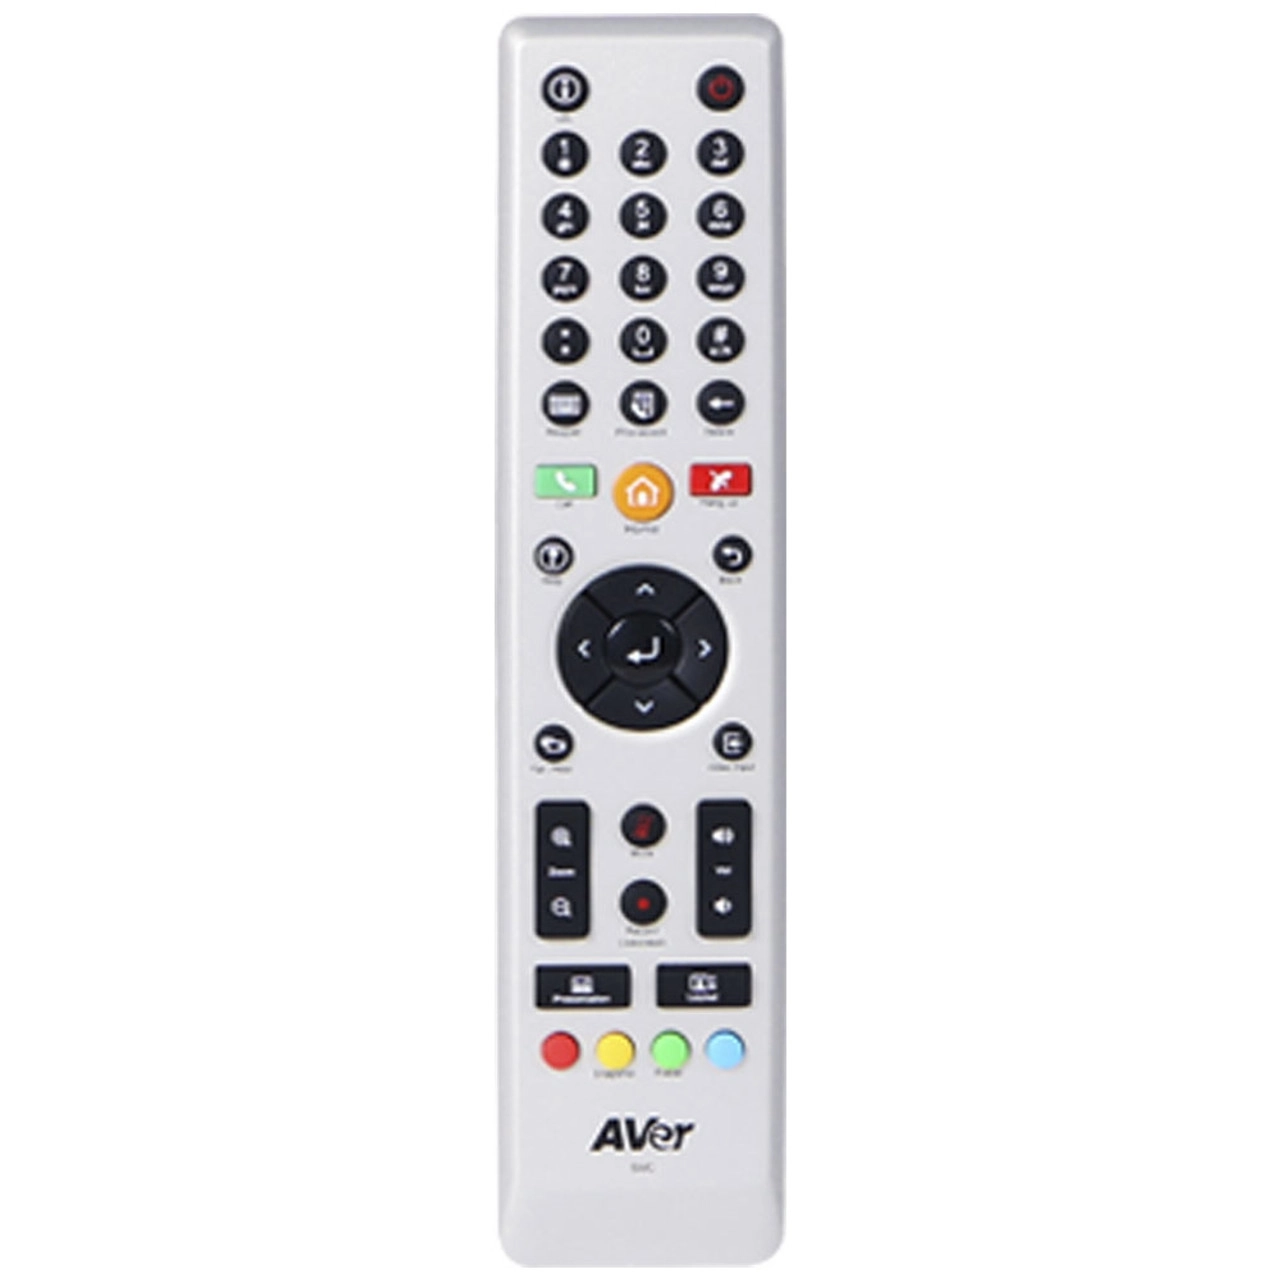 AVer SVC100 Omni Protocol Video Conferencing System remote